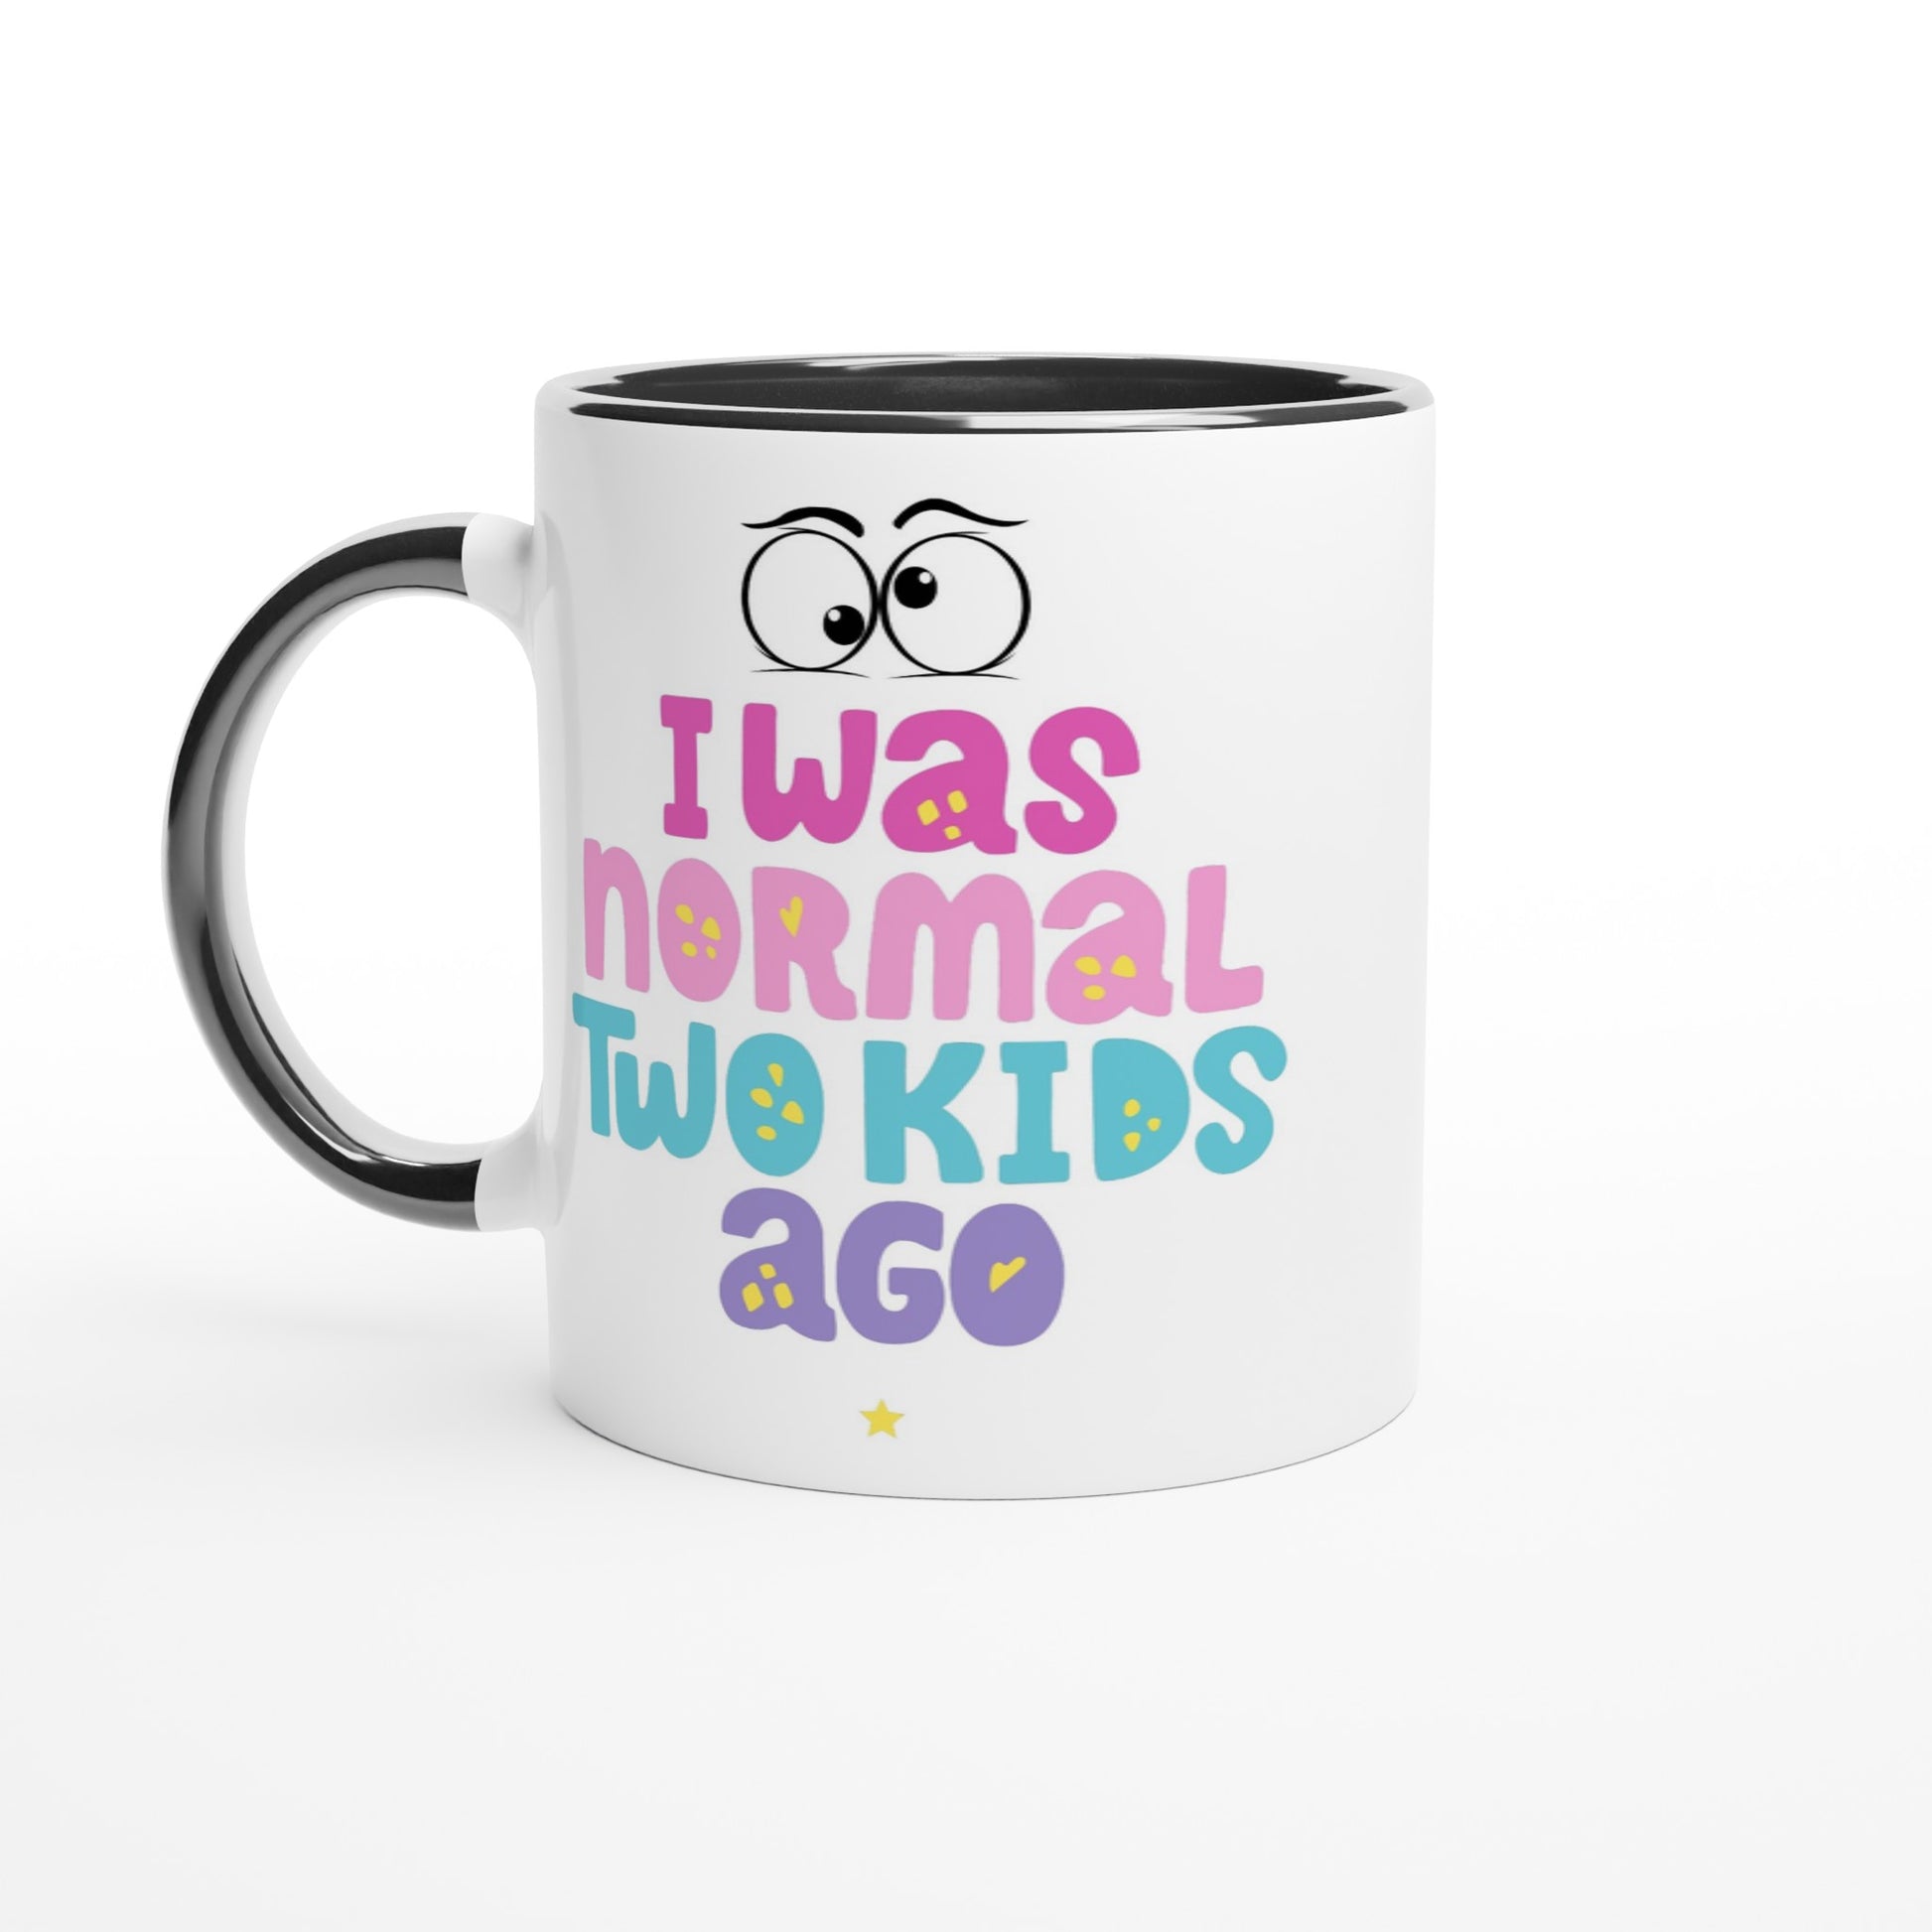 I Was Normal Two Kids Ago - White 11oz Ceramic Mug with Colour Inside Ceramic Black Colour 11oz Mug Dad mum